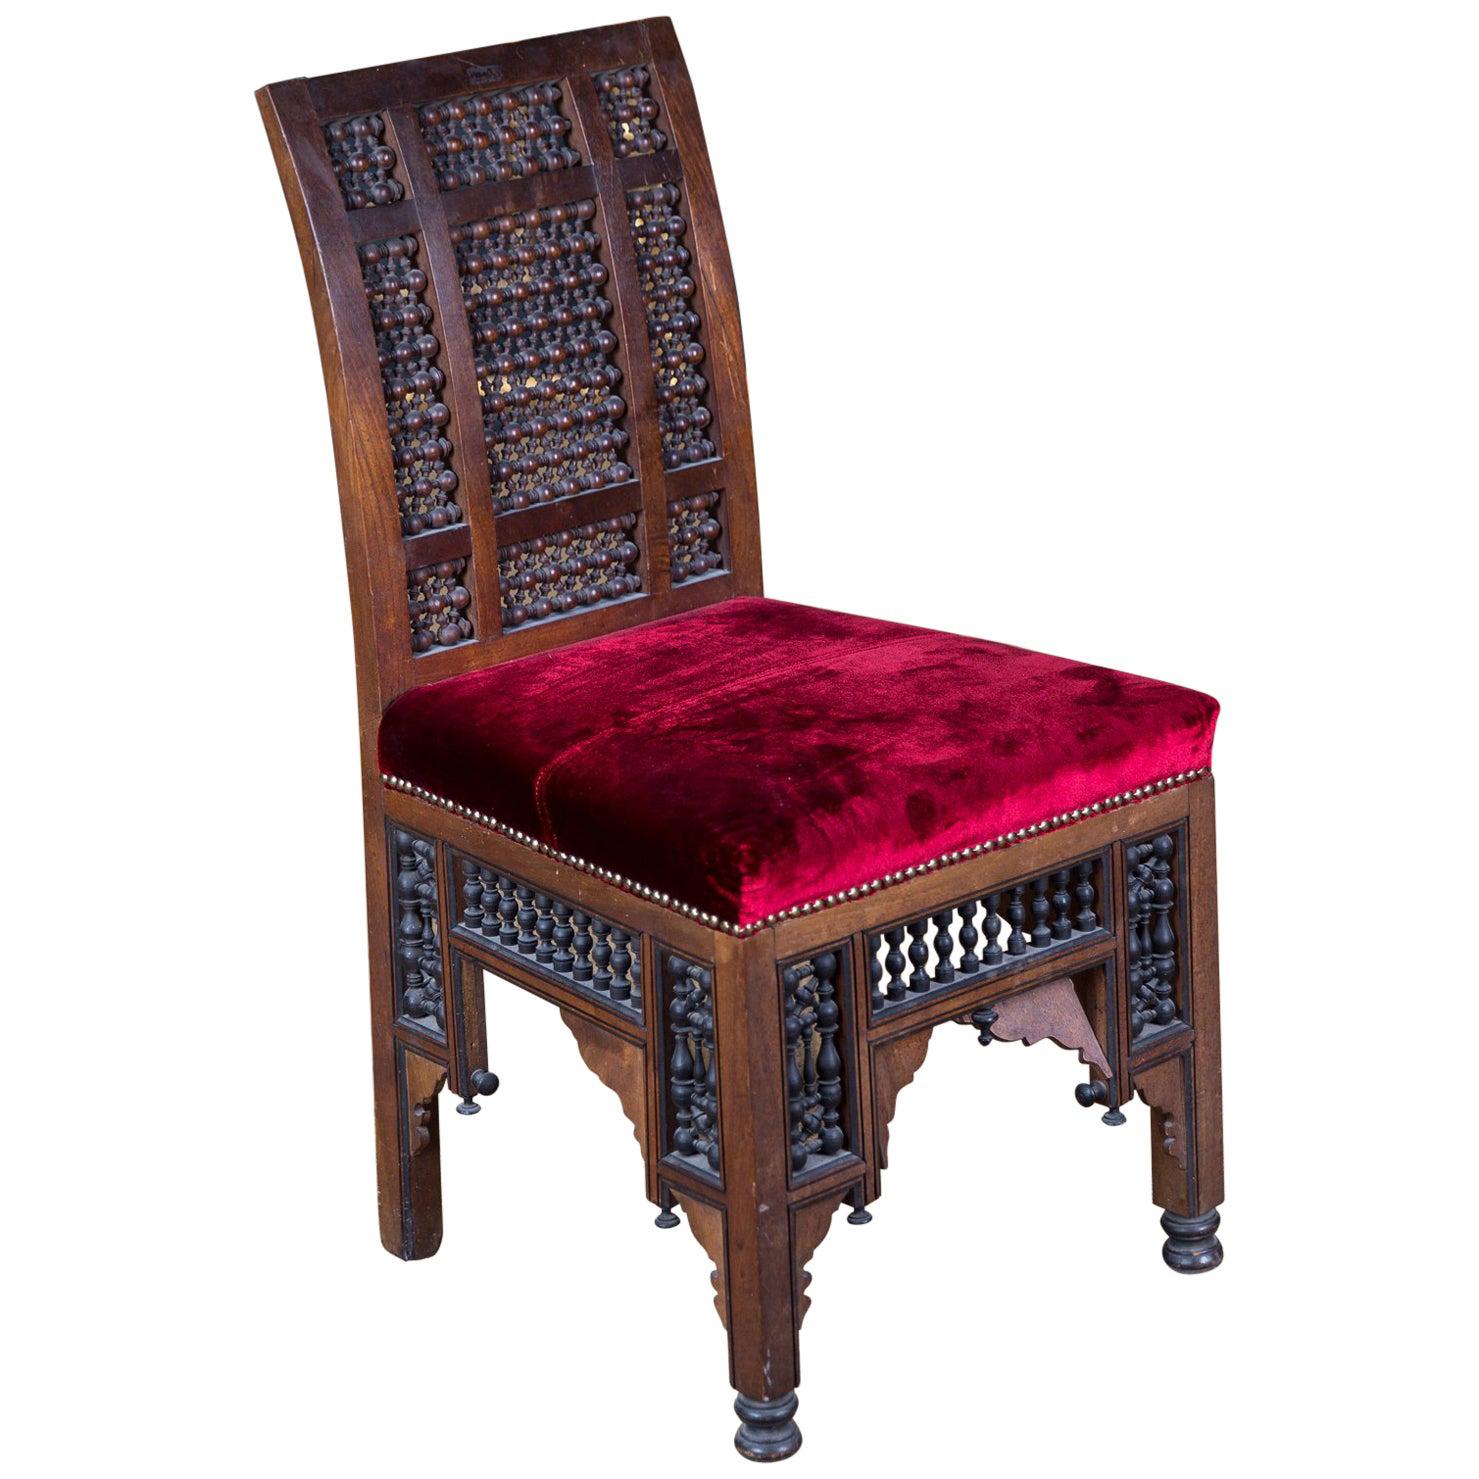 Orientalischer Stuhl des 19. Jahrhunderts mit Intarsien aus Marakesh, um 1900